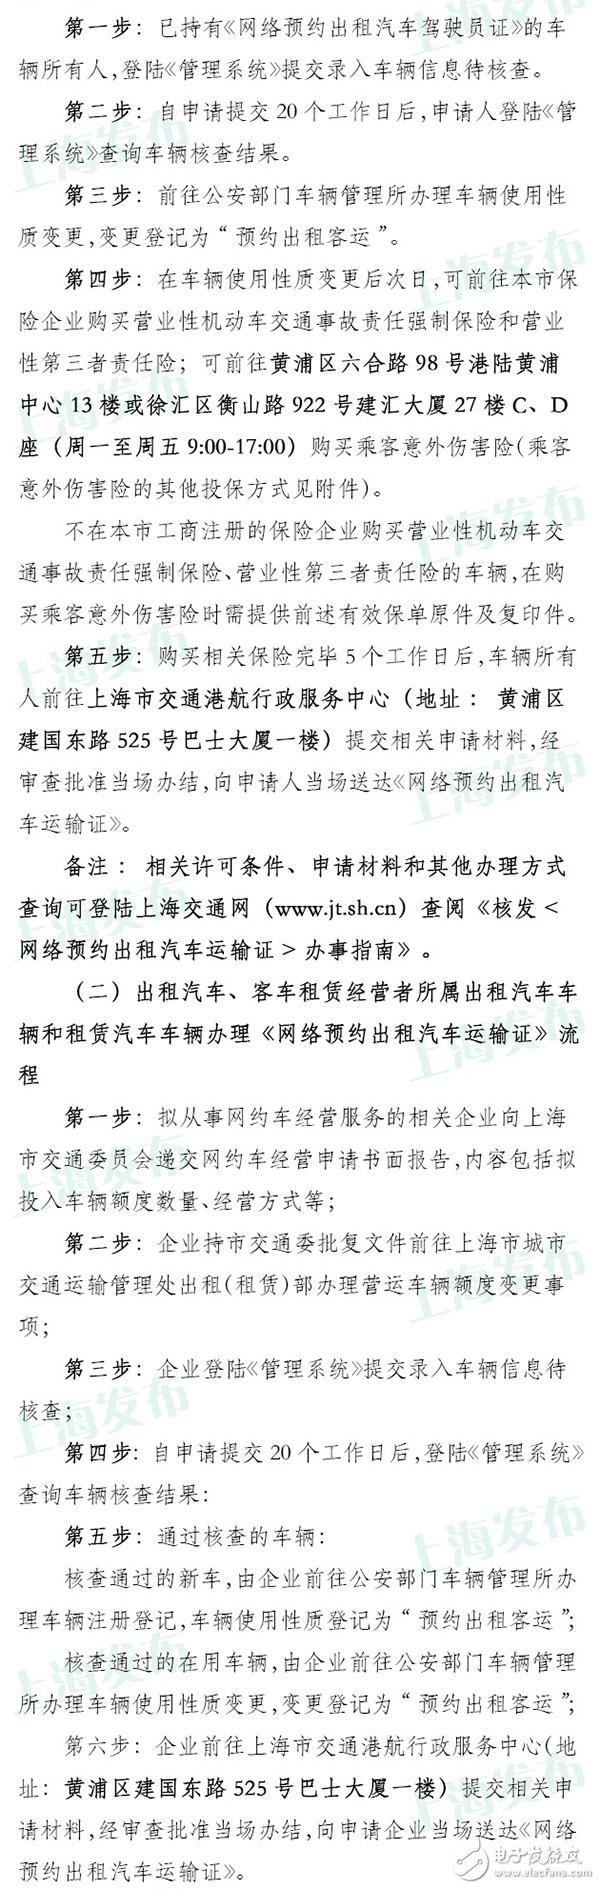 上海网约车申请今日已开放 具体流程公布无从业资格需考试,上海网约车申请今日已开放 具体流程公布无从业资格需考试,第5张